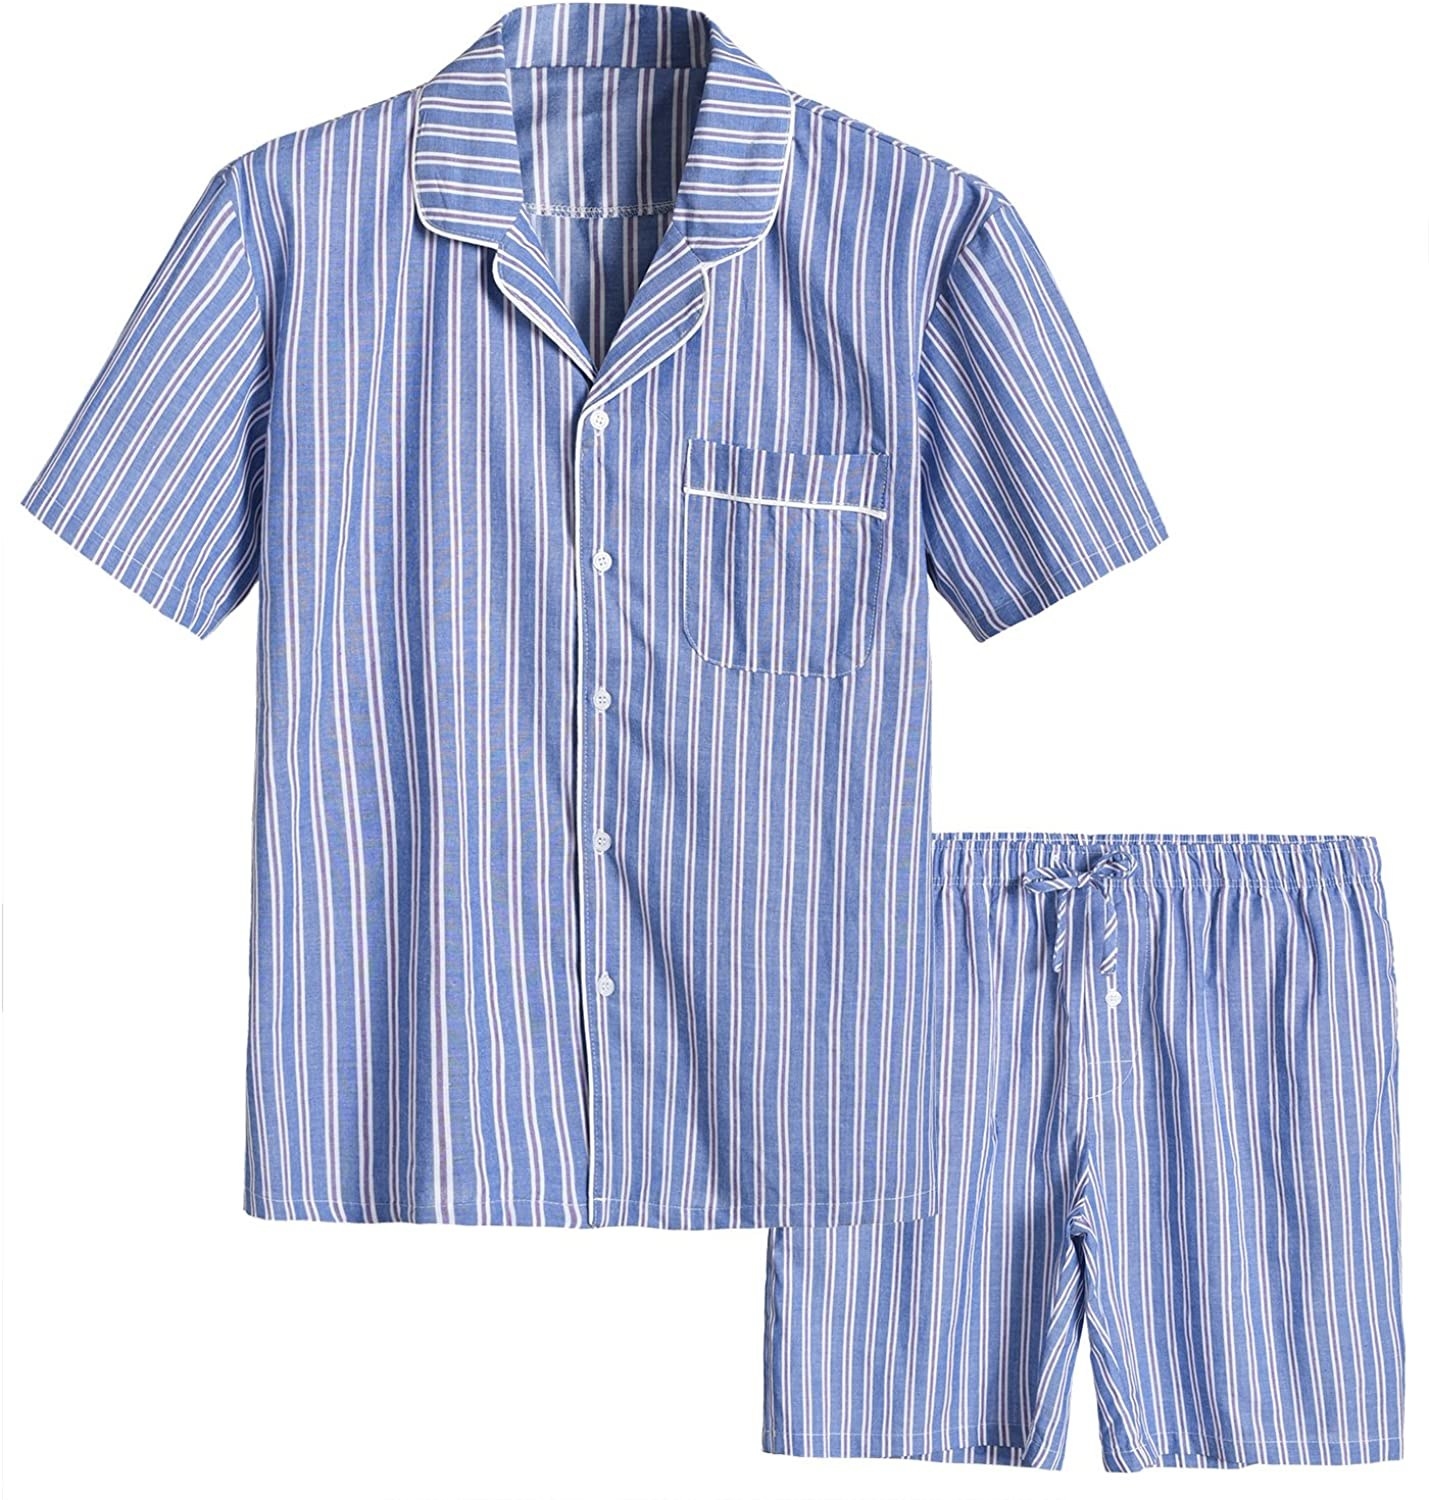 The pajama set in blue stripe